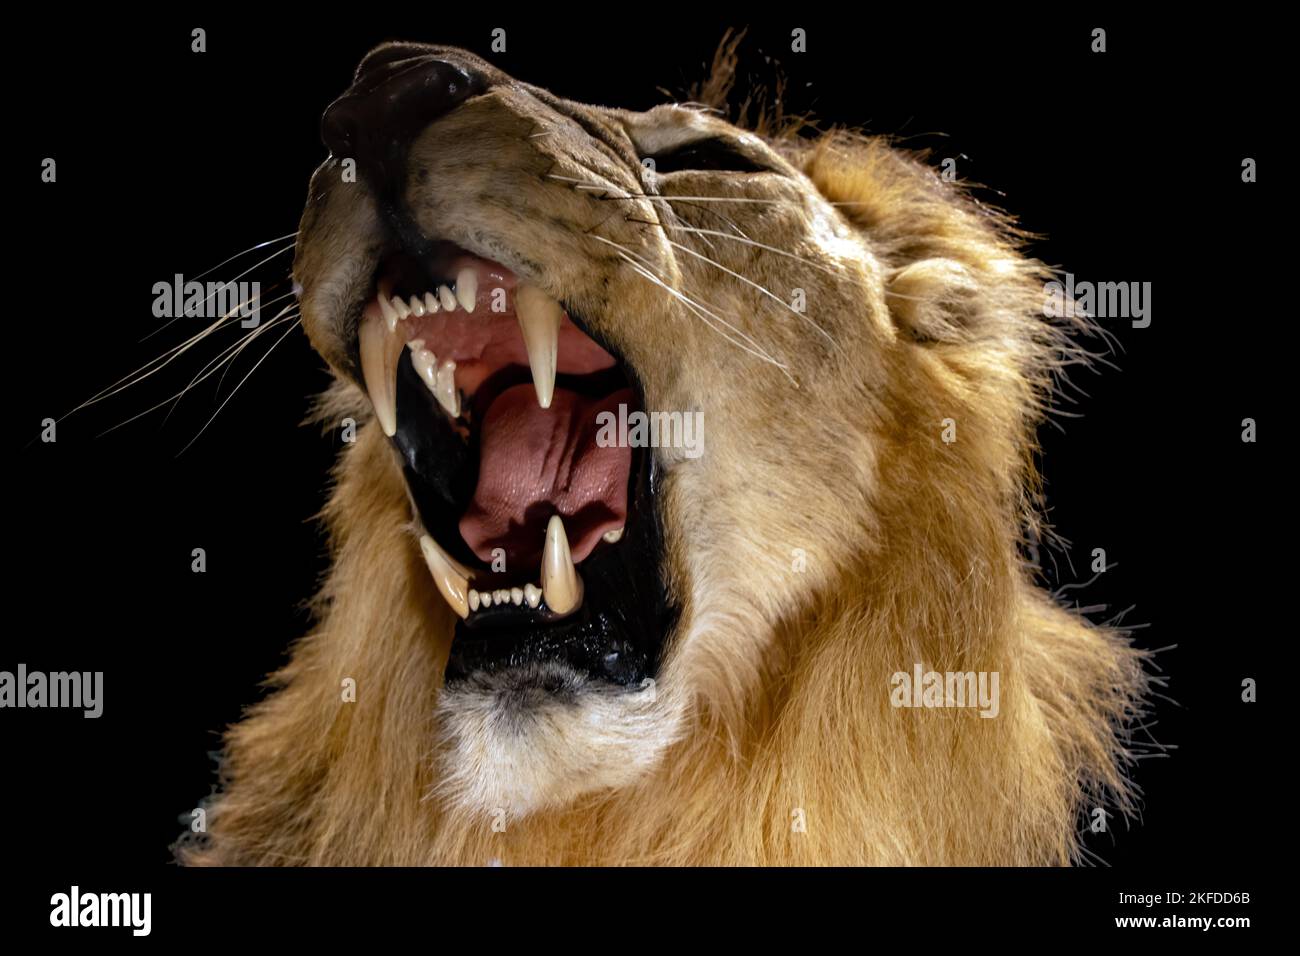 Un portrait d'un lion rugissant, sur fond noir Banque D'Images